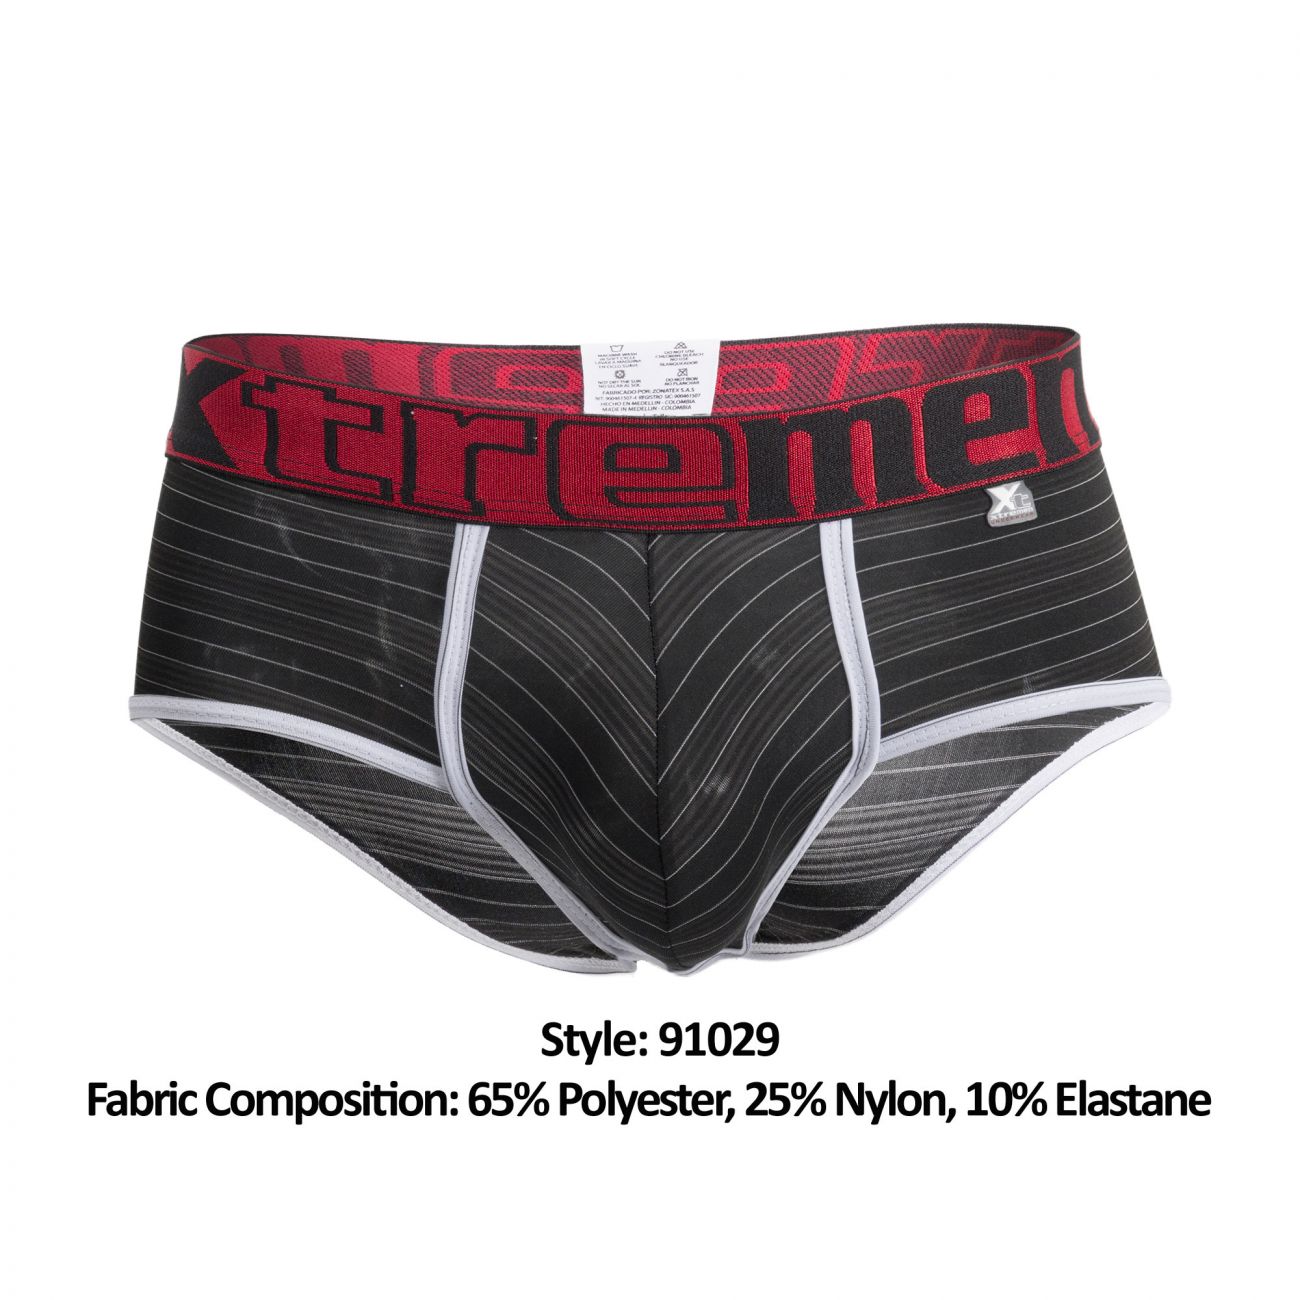 Xtremen 91029 Stripes Briefs